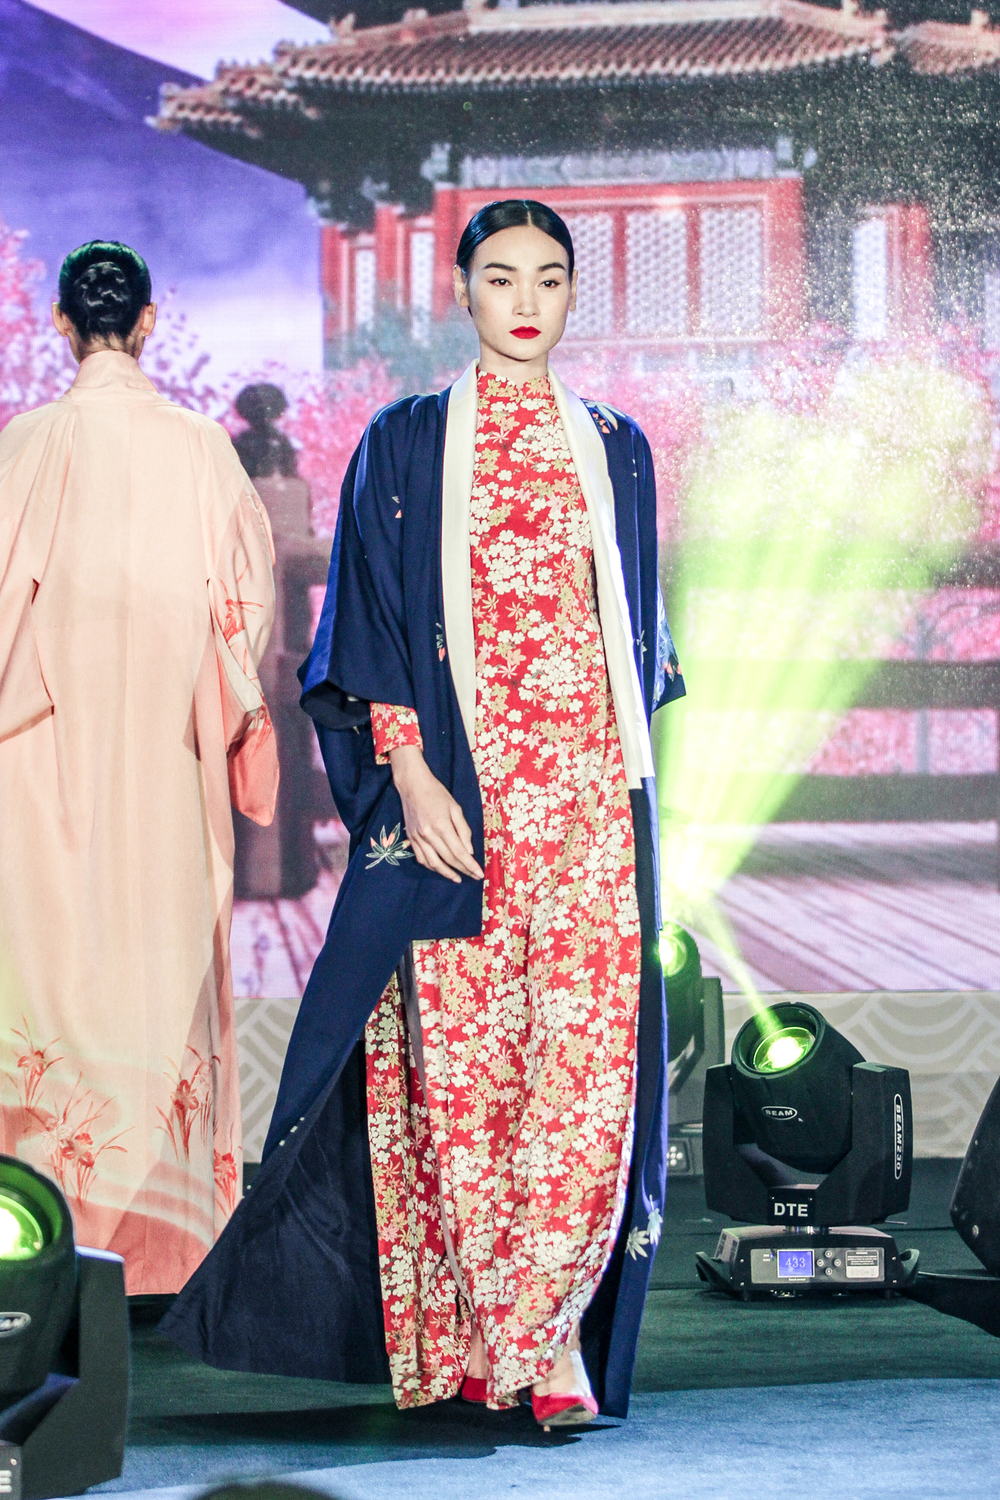 
Bên cạnh đó, tại sự kiện cũng có phần trình diễn giao thoa của 2 nền văn hóa Việt - Nhật vô cùng thú vị. Trên sân khấu ngoài phần múa với trang phục kimono, còn là những tà áo dài được thiết kế kết hợp nét truyền thống của Nhật.